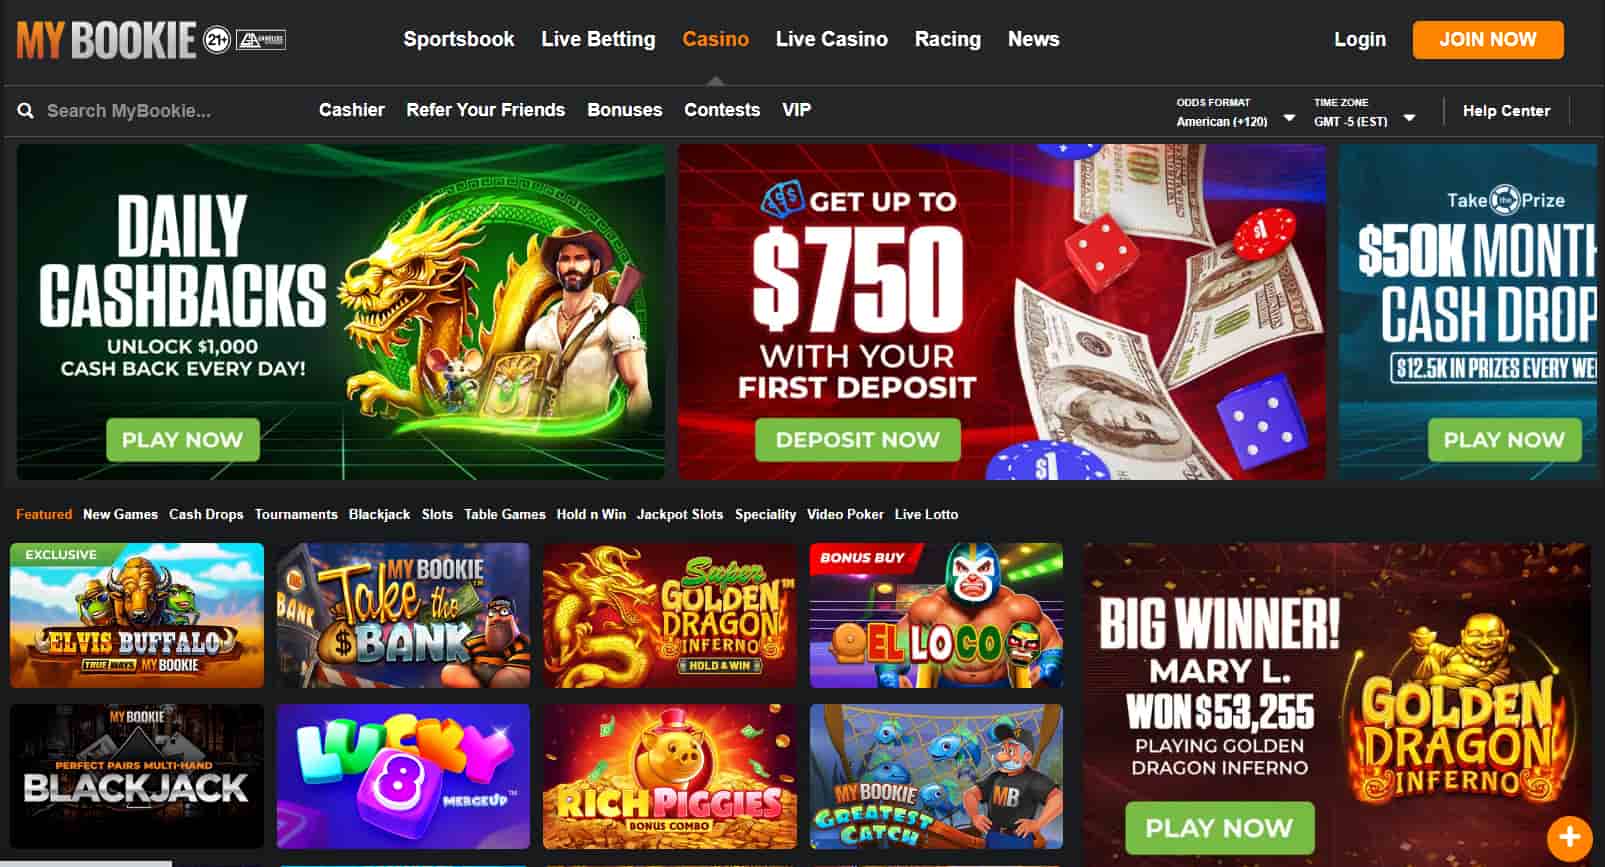 offshore gambling partners mybookie casino welcome bonus